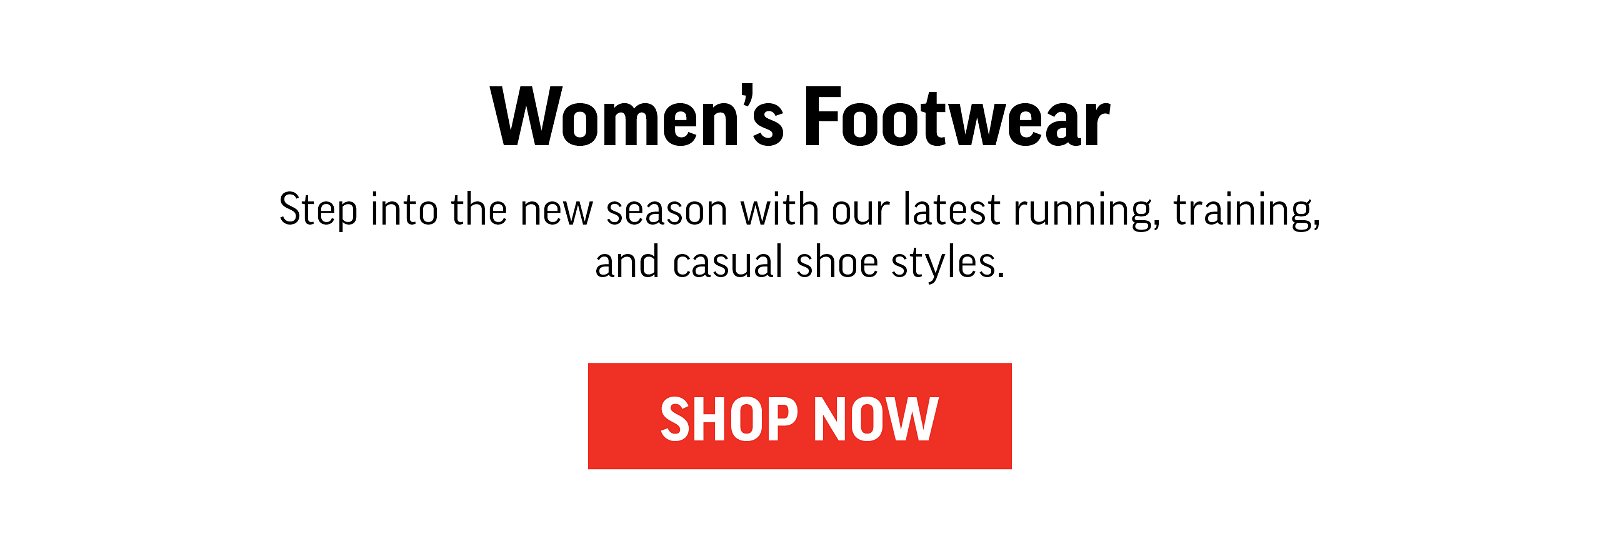 NEW ARRIVALS: WOMEN'S FOOTWEAR